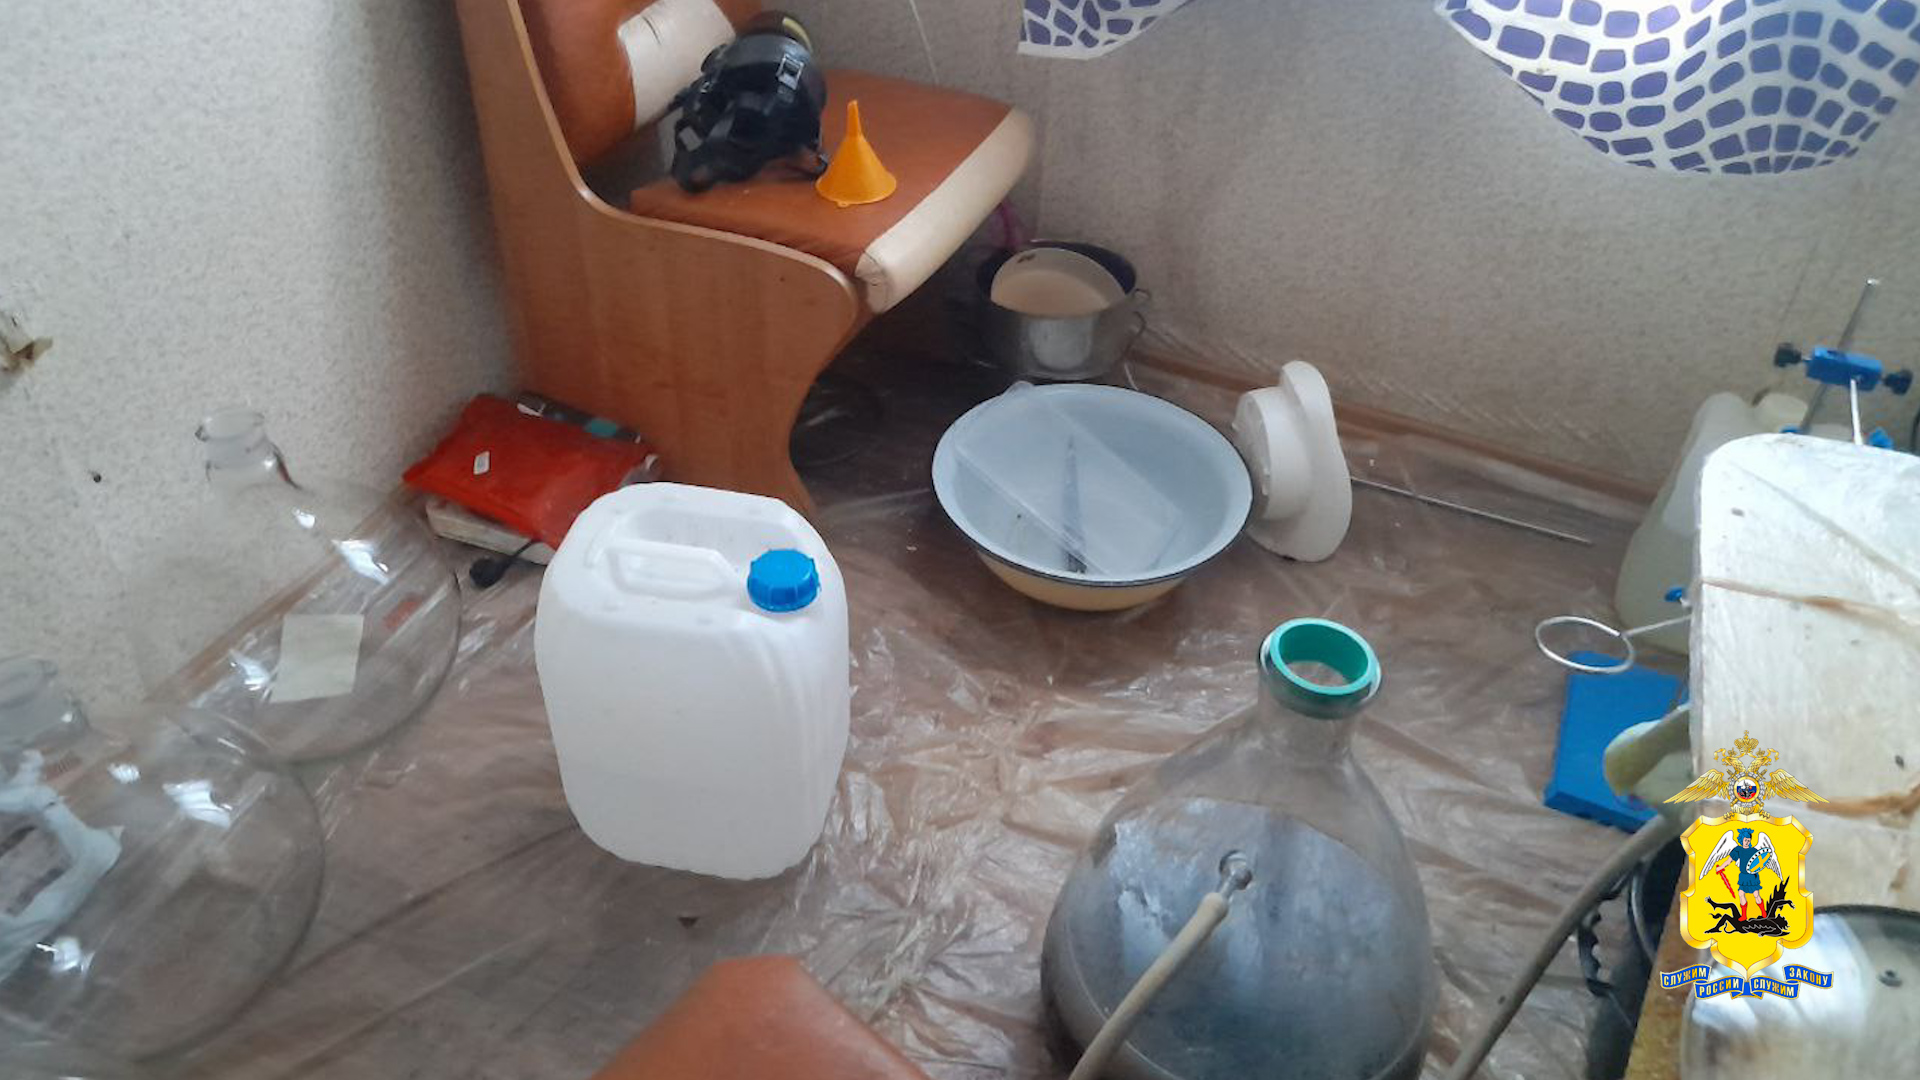 Архангельские полицейские обнаружили нарколабораторию в квартире дома на острове Кего